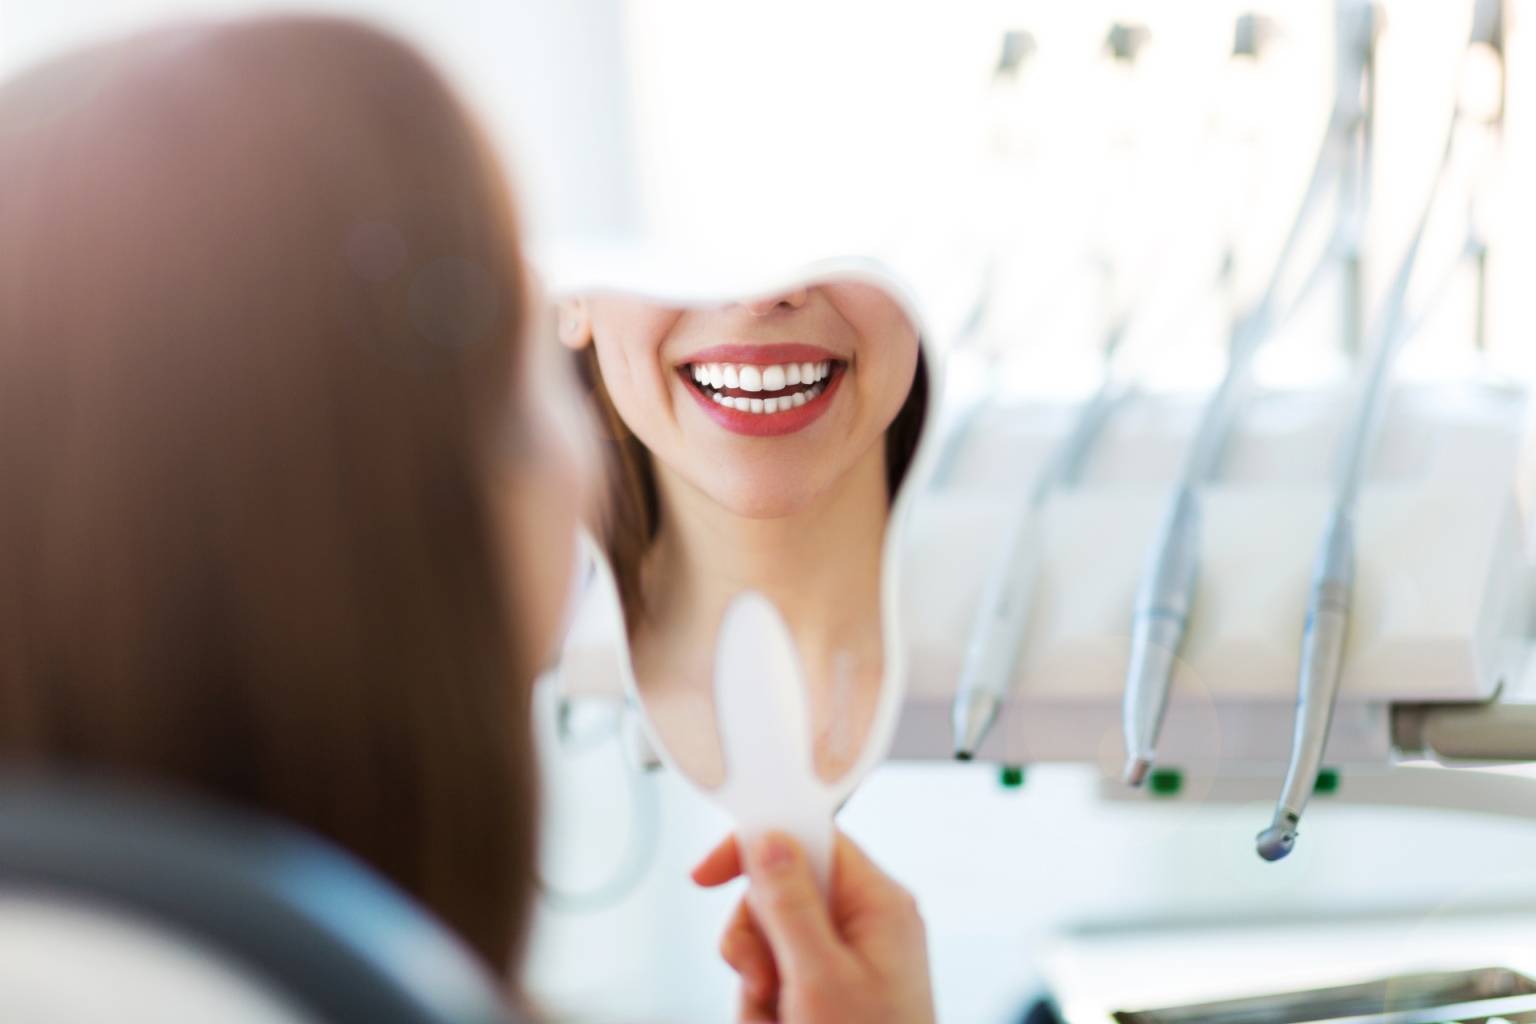 Strach przed dentystą - jak nie bać się dentysty? Kobieta przygląda się swojemu uzębieniu w małym lusterku, siedząc na fotelu w gabinecie dentystycznym.